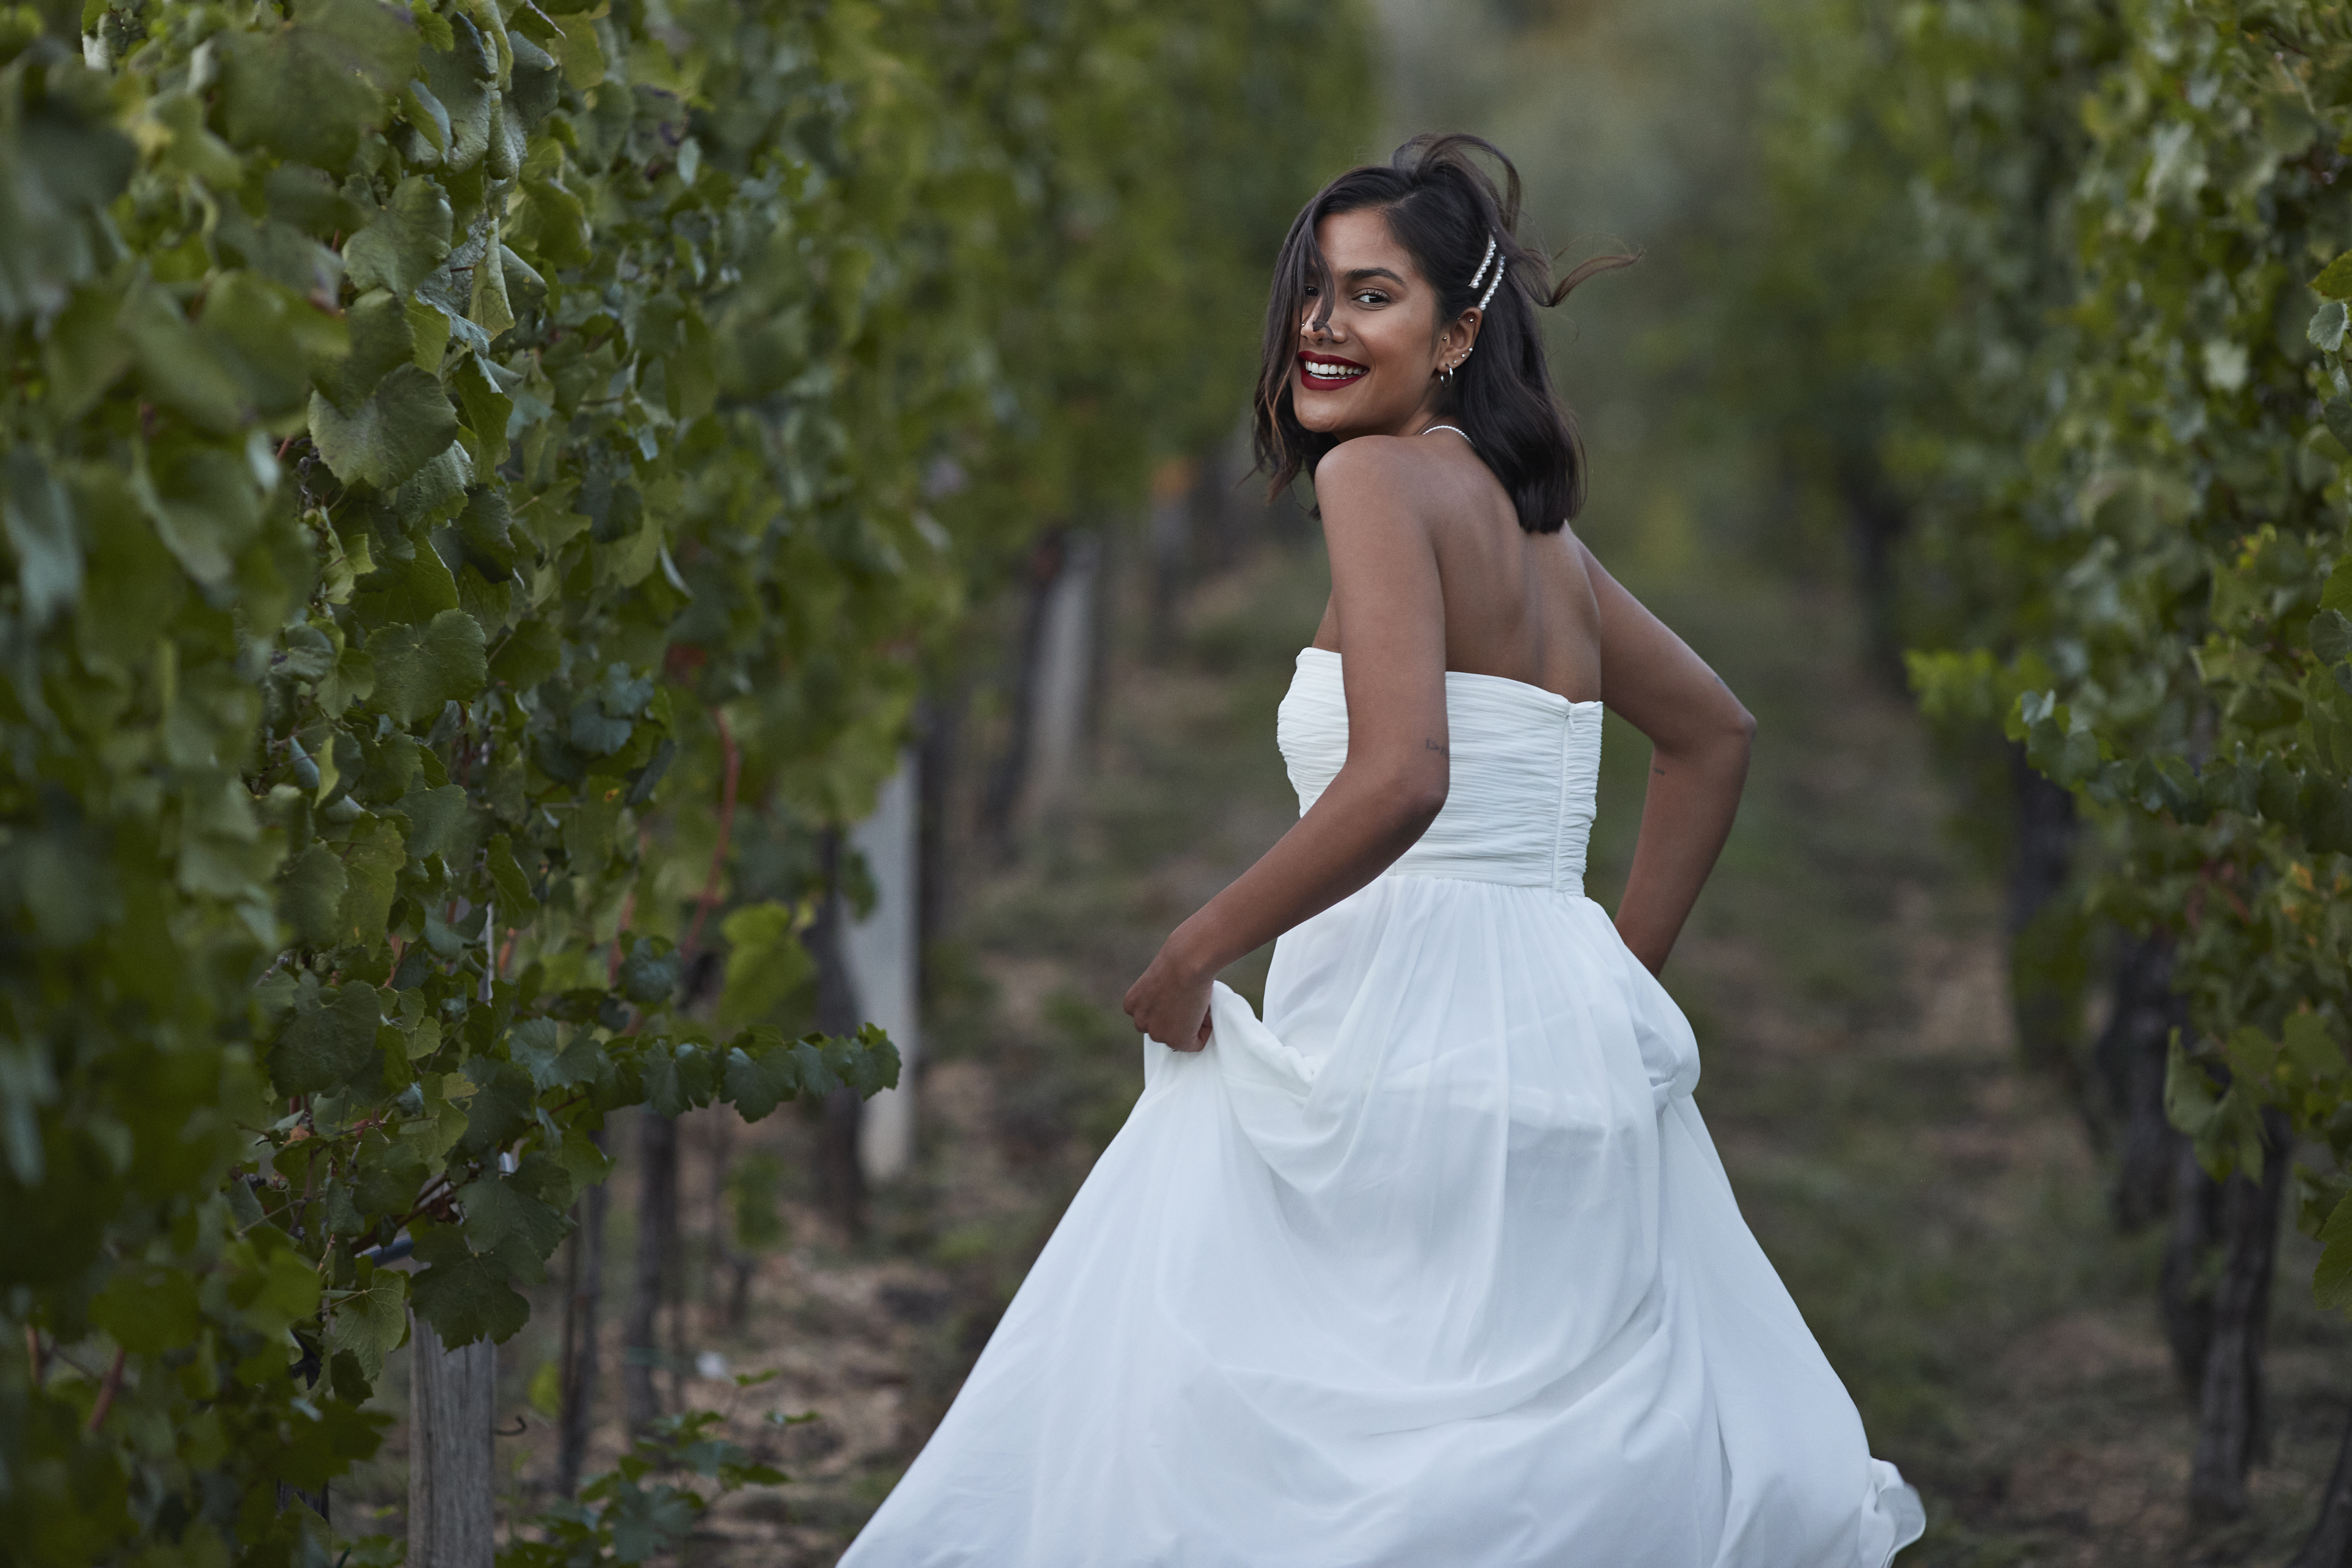 Eine Frau in einem Feld, lächelnd in ihrem Hochzeitskleid | Quelle: Getty Images